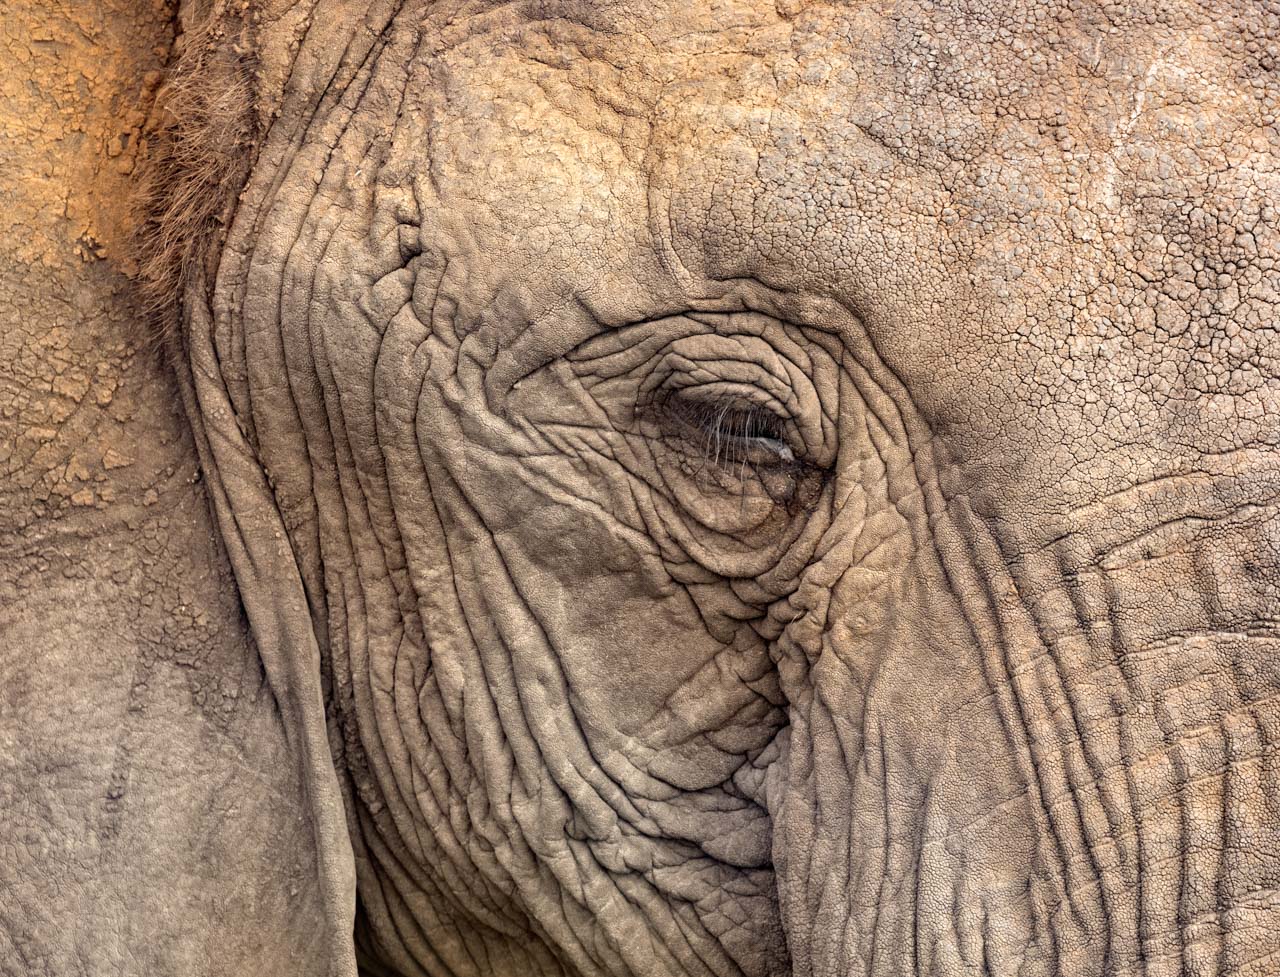 Elephant eye close up. NJ Wight